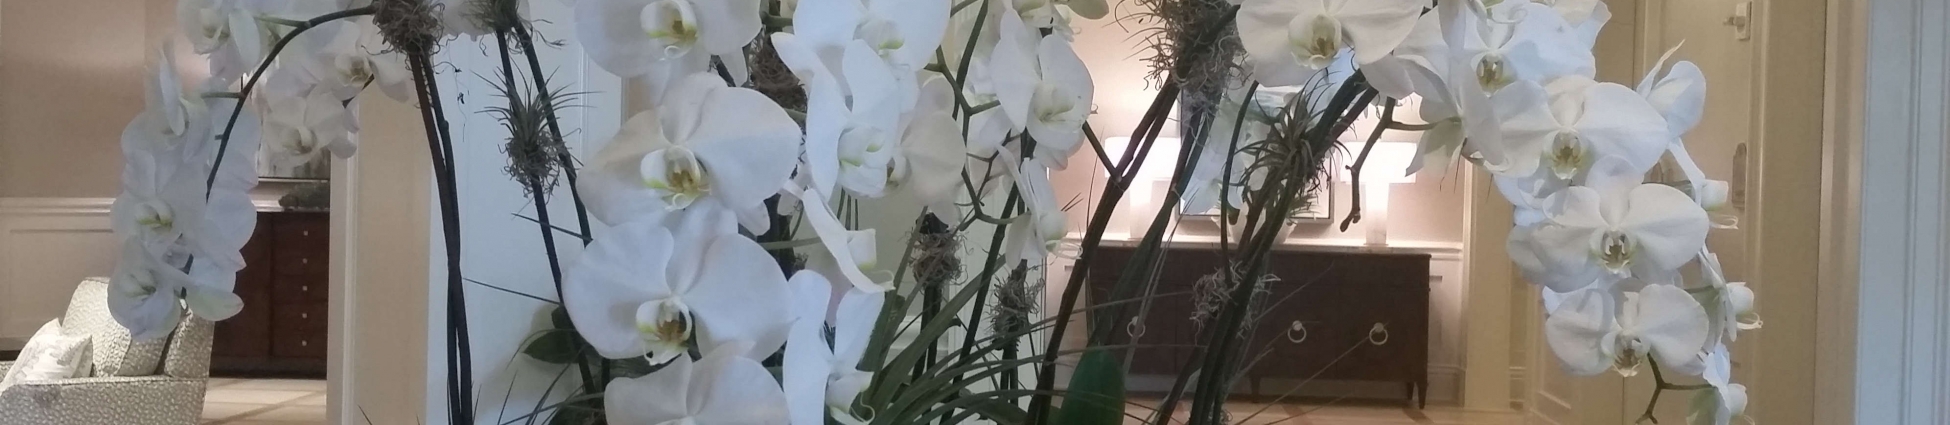 Orchids at Foliage Décor Services